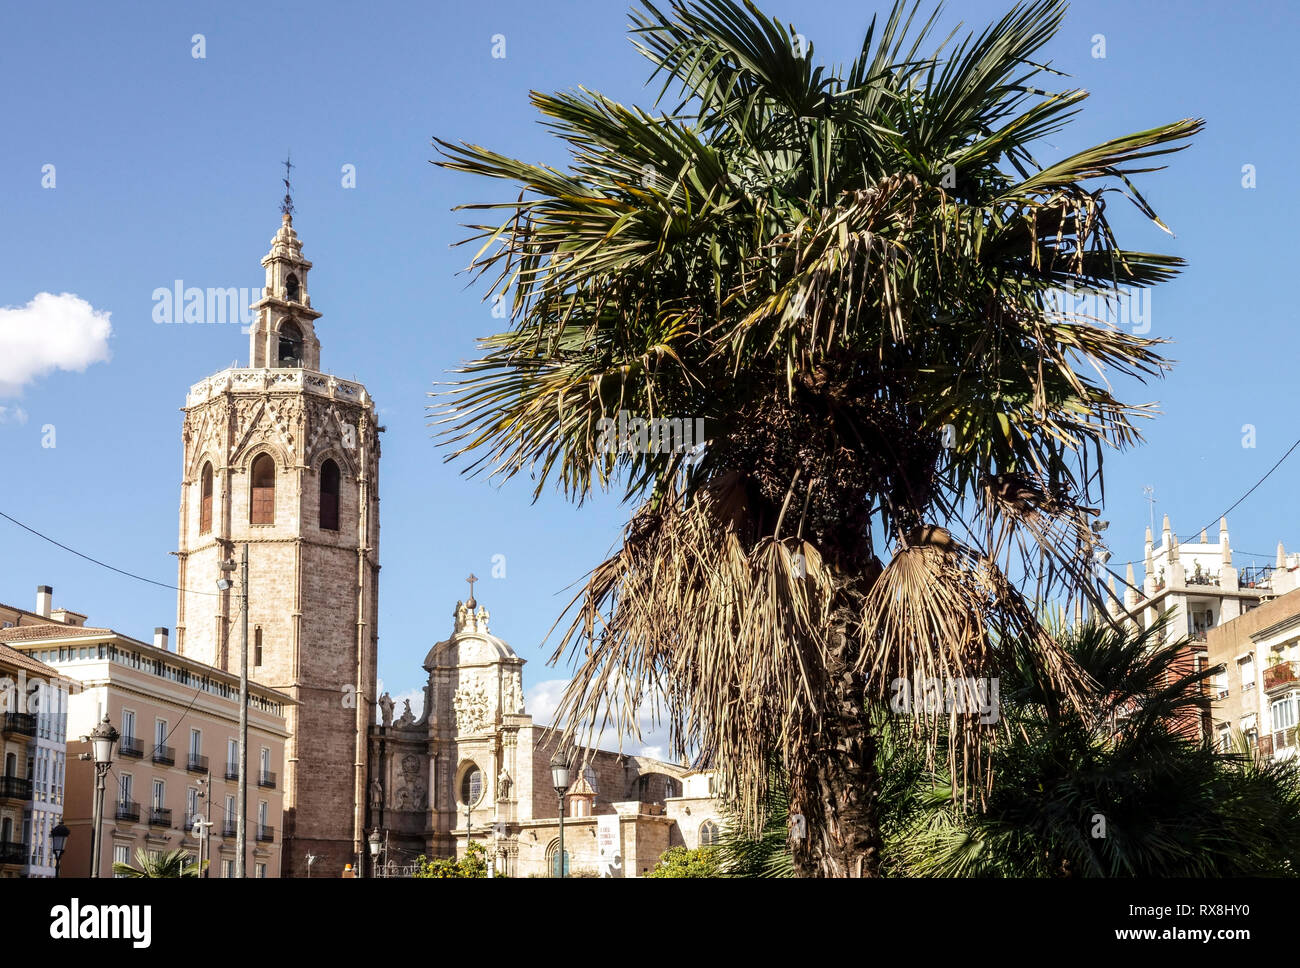 Valence, El médiévale Cathédrale clocher à Micalet, palmier, Plaza de la Reina, Vieille Ville, Espagne Banque D'Images